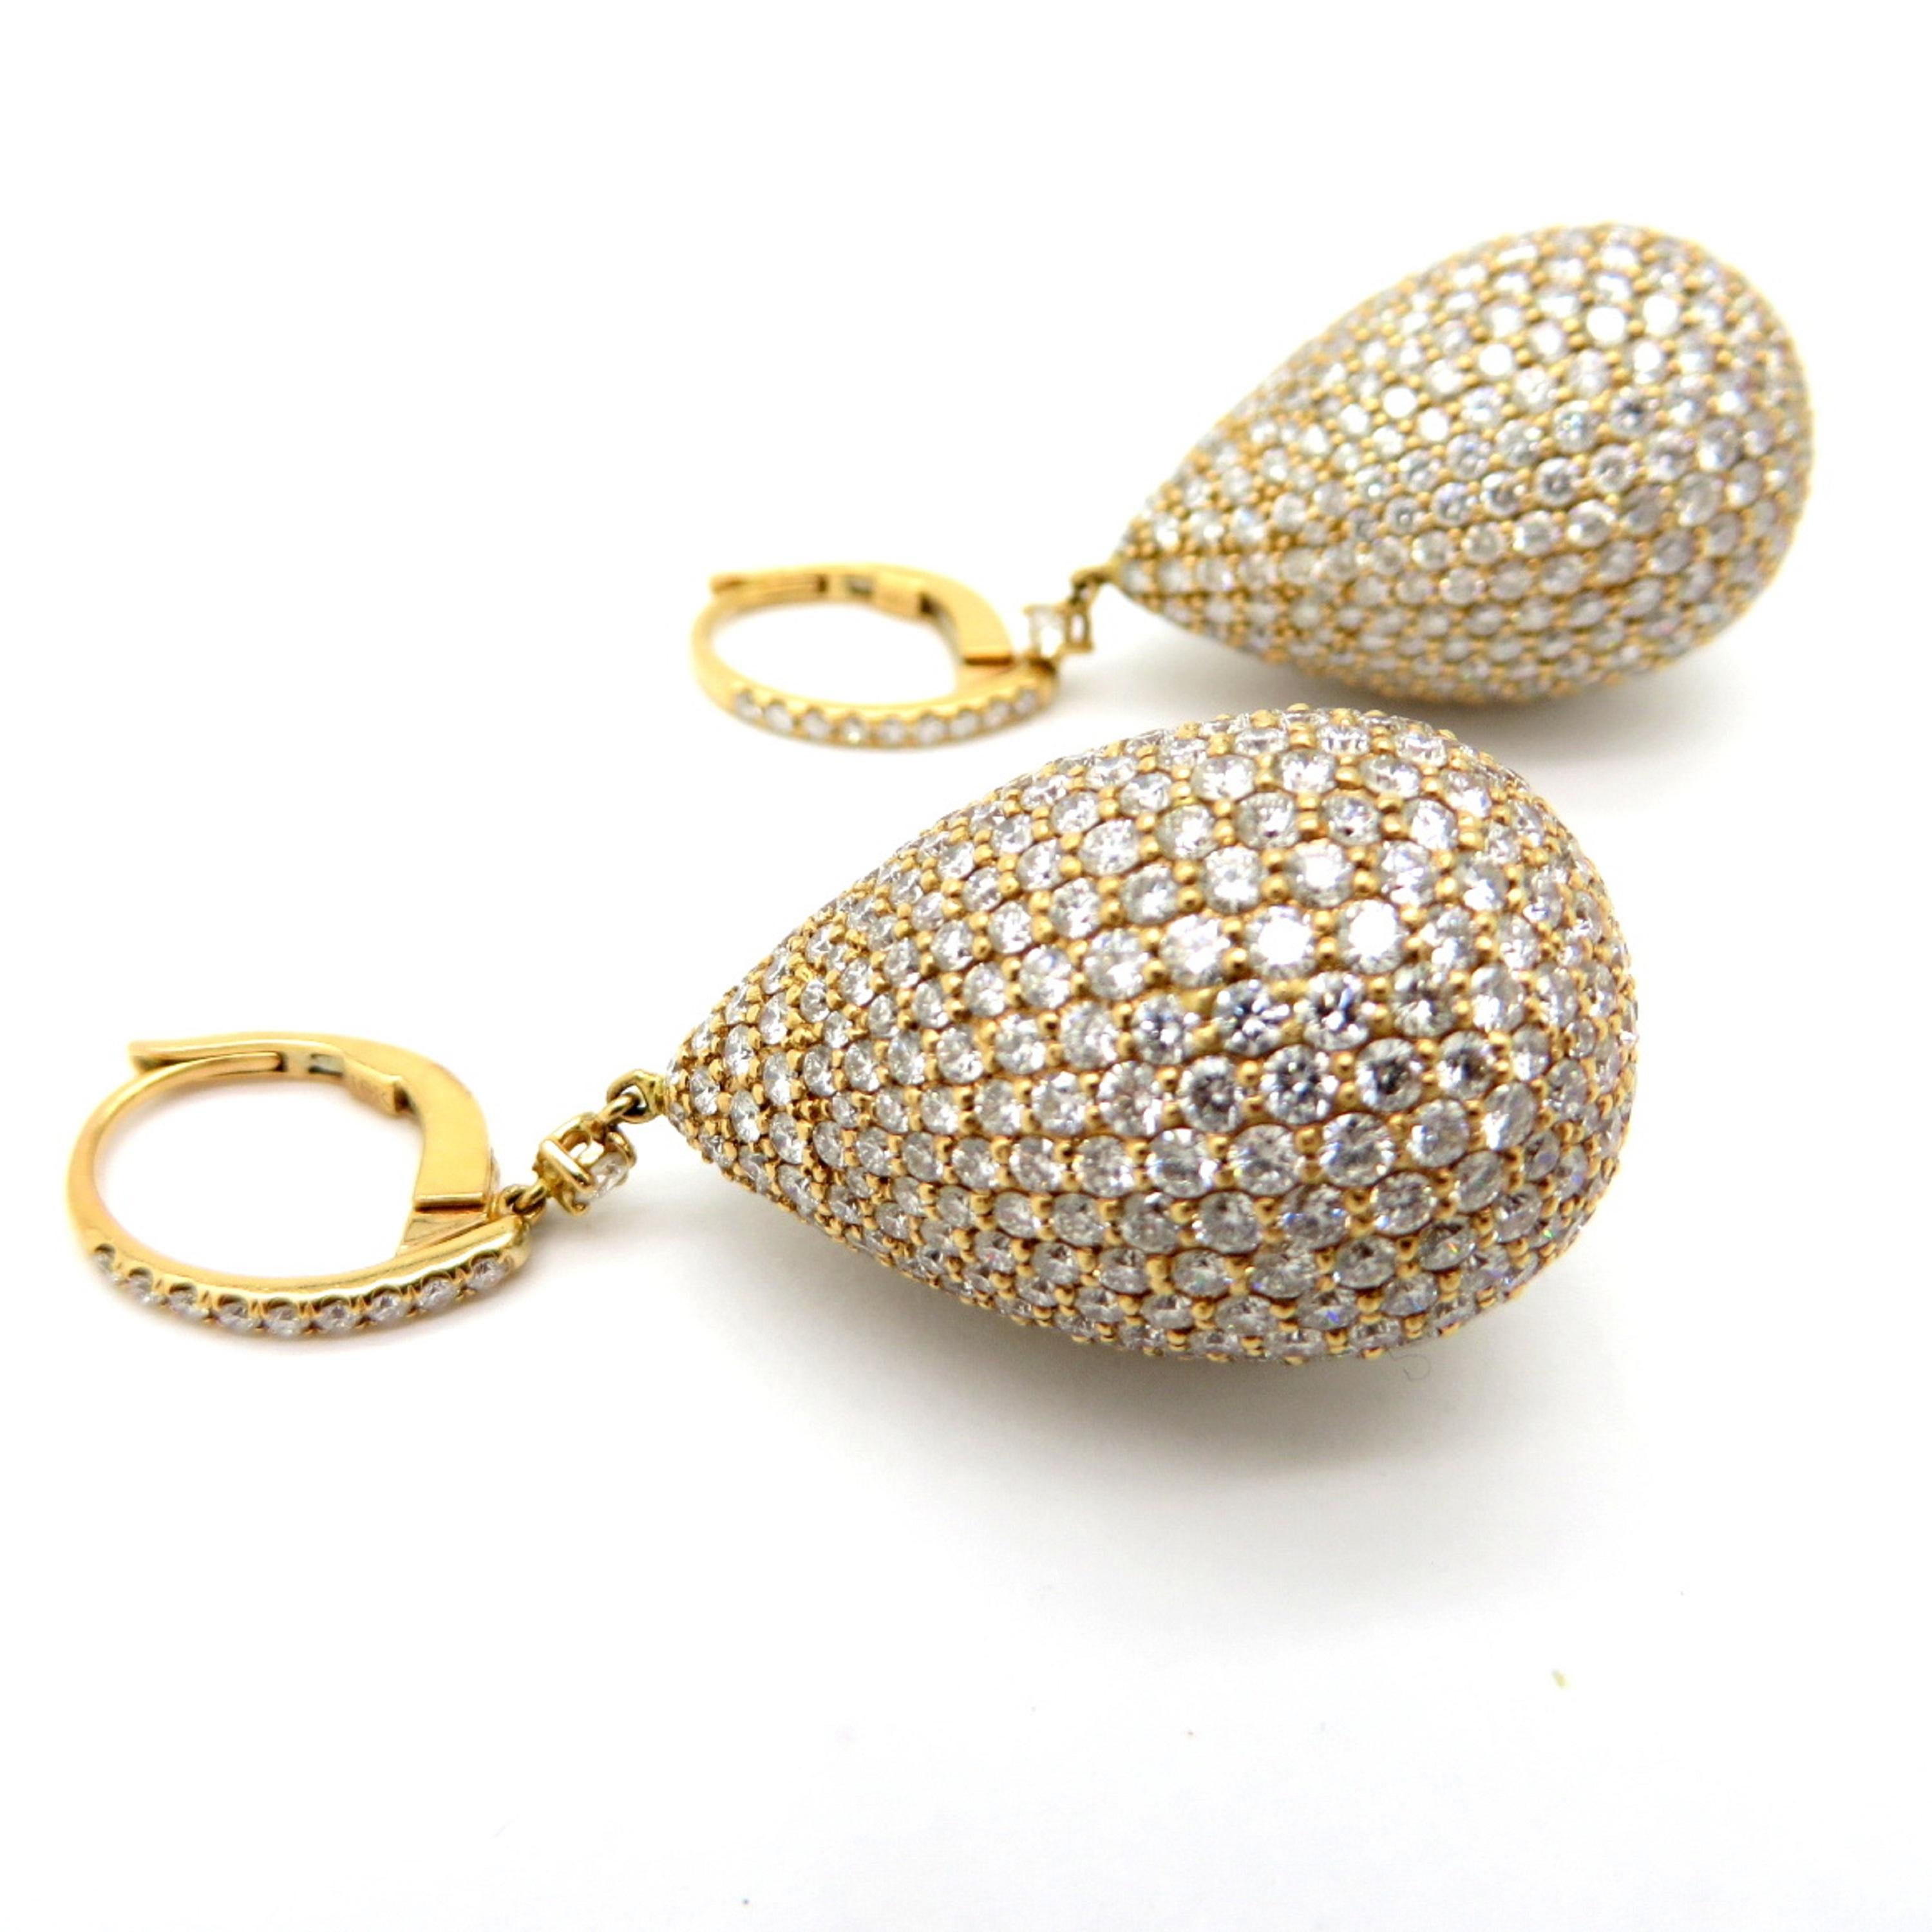 Zum Verkauf steht ein wunderschönes Paar runder Diamant-Ohrringe im Teardrop-Design!
Die Ohrringe sind aus massivem 18 Karat Roségold gefertigt.
Mit 938 runden Diamanten im Brillantschliff mit verschiedenen Abmessungen und einem Gesamtgewicht von